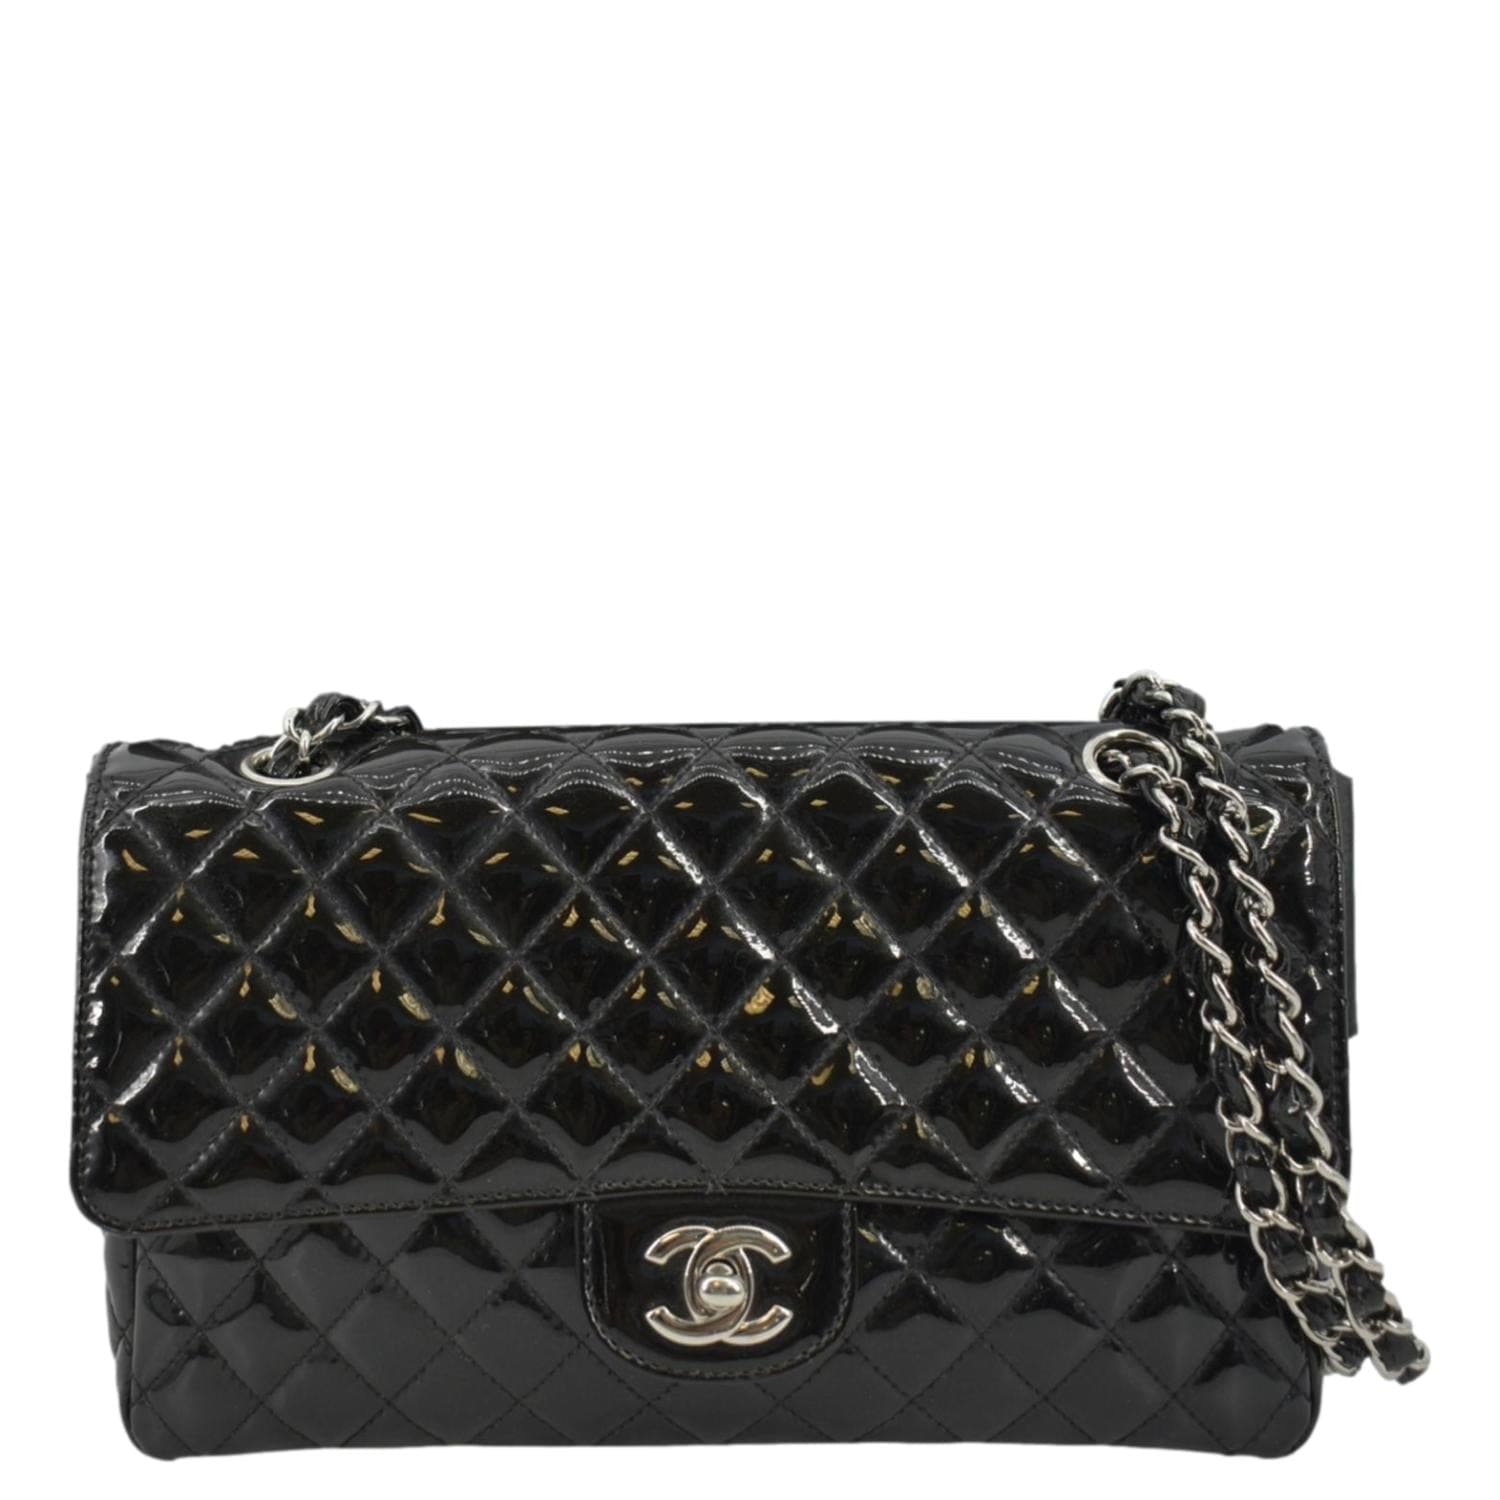 CHANEL Black Patent Leather Vintage Box Shoulder Bag - The Purse Ladies